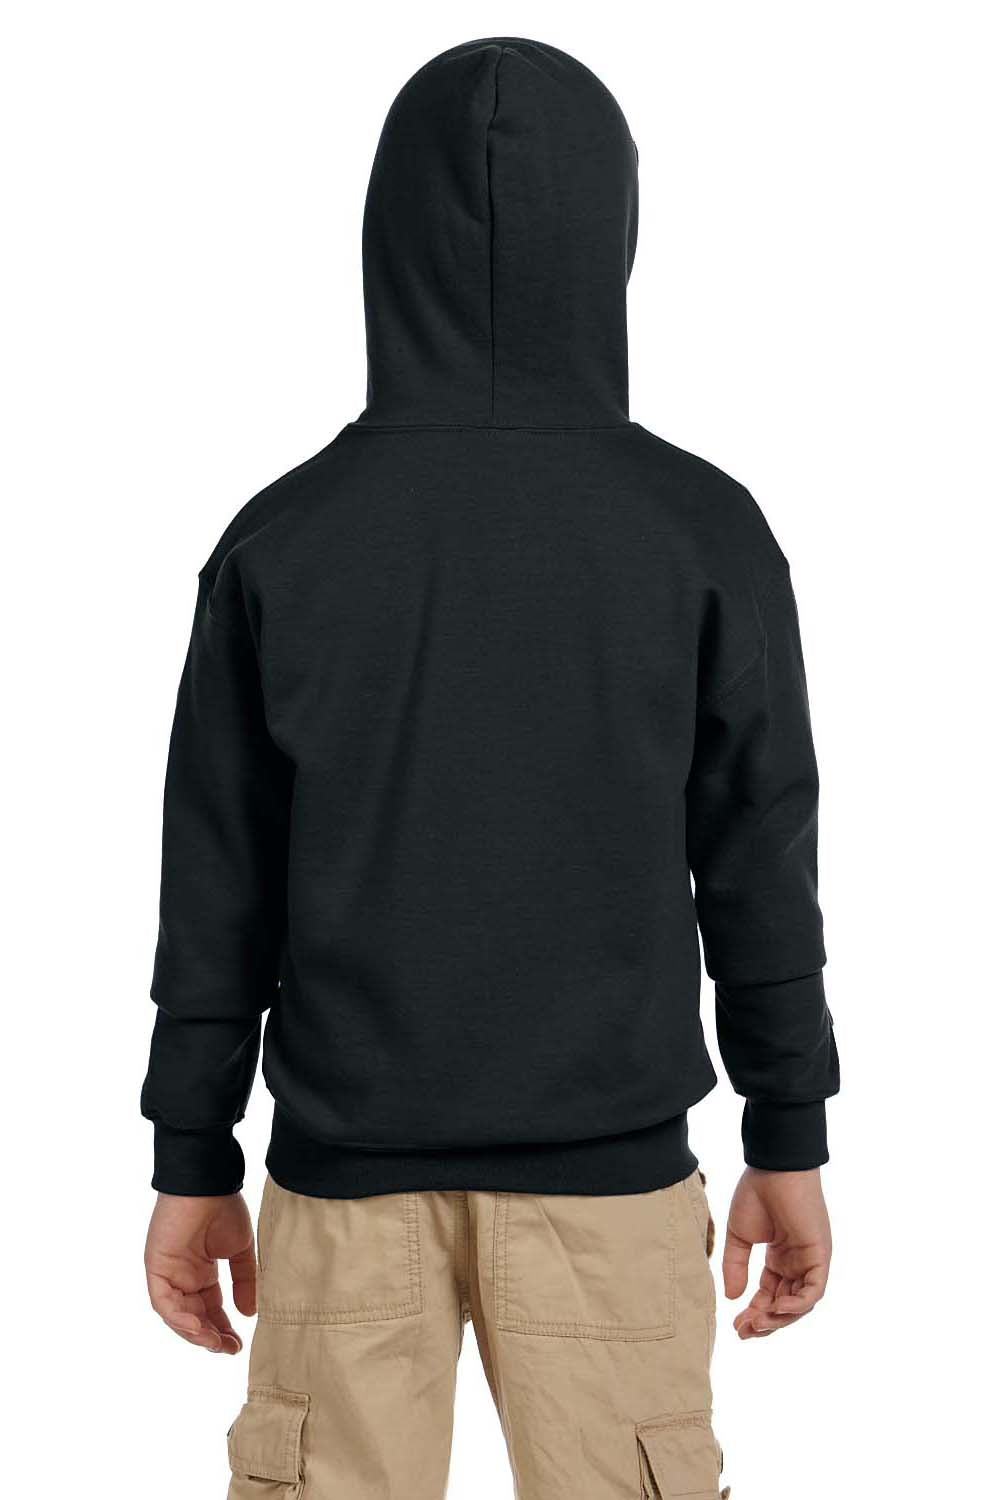 Gildan G186B Youth Full Zip Hooded Sweatshirt Hoodie Black Back